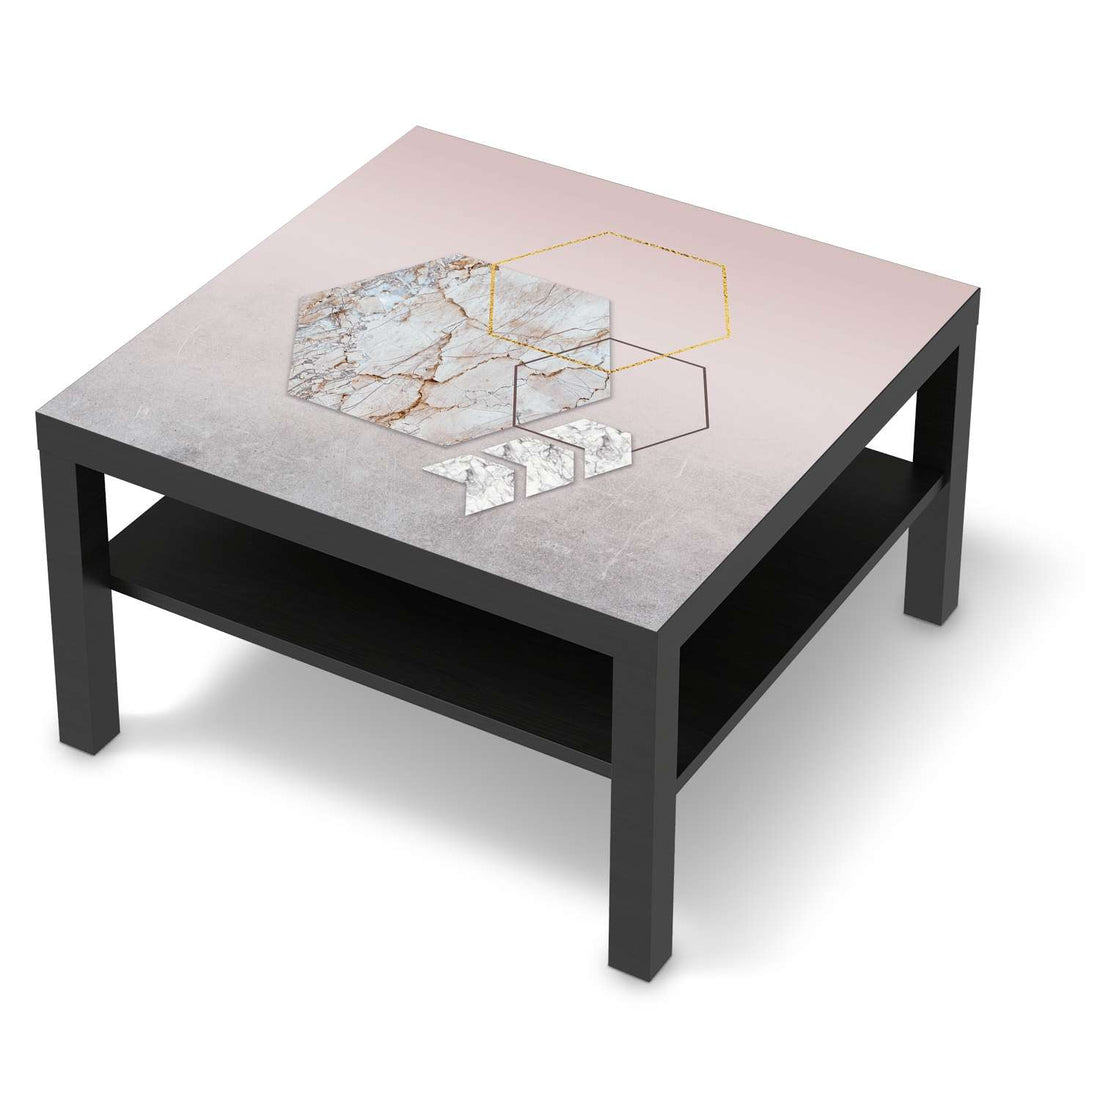 Selbstklebende Folie Hexagon - IKEA Lack Tisch 78x78 cm - schwarz